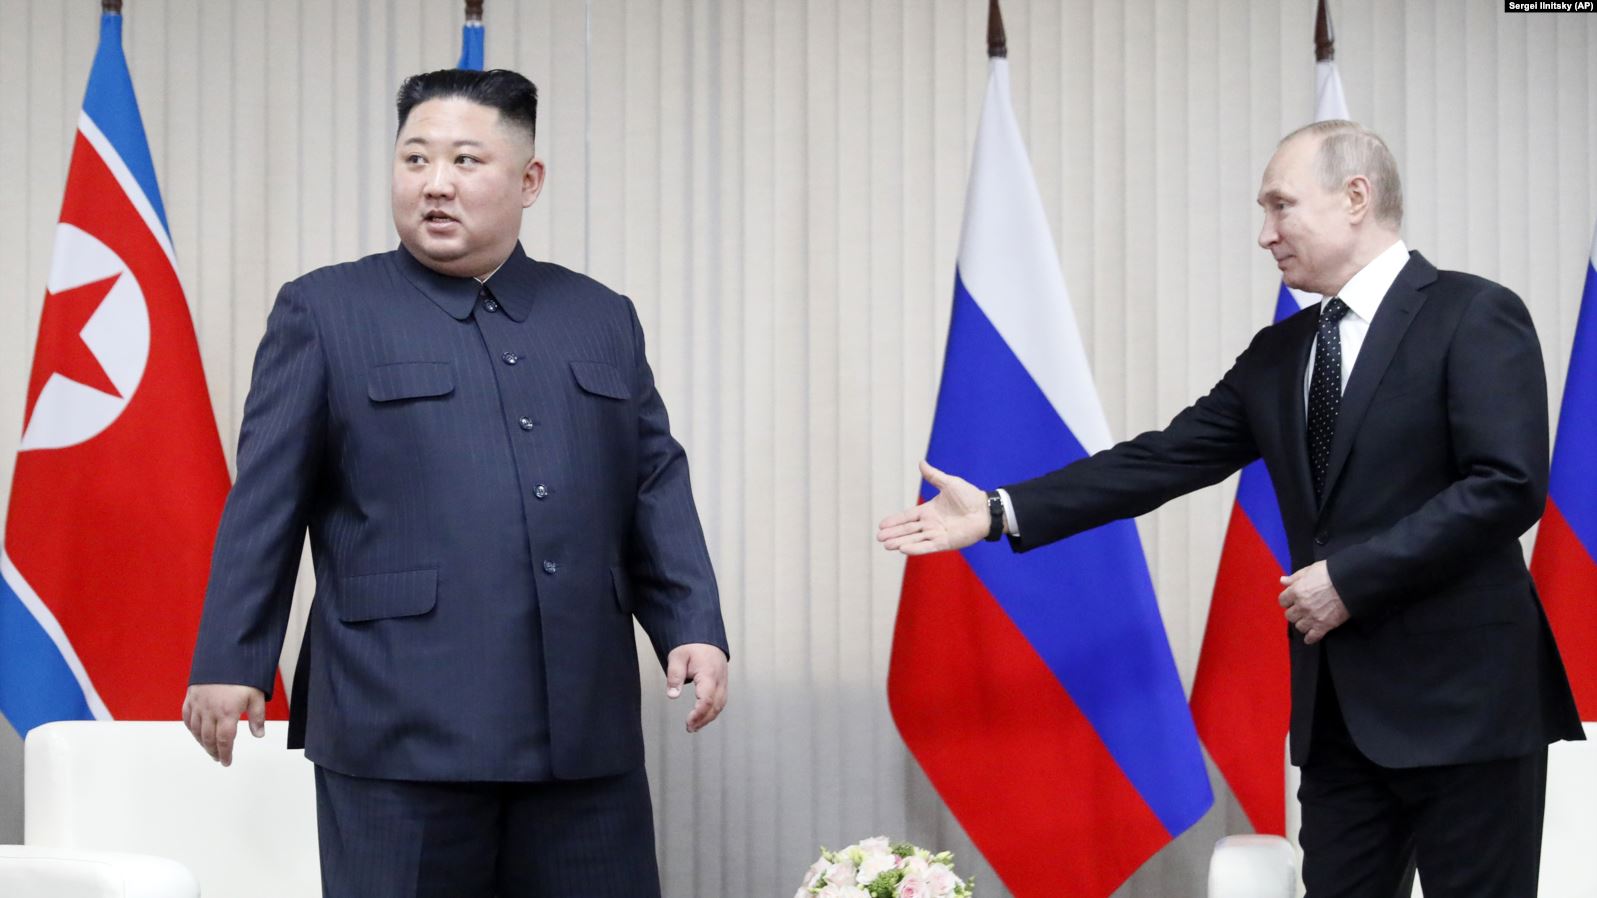 Путин и Ким Чен Ын встретились под «Танец с саблями» и подарили друг другу мечи